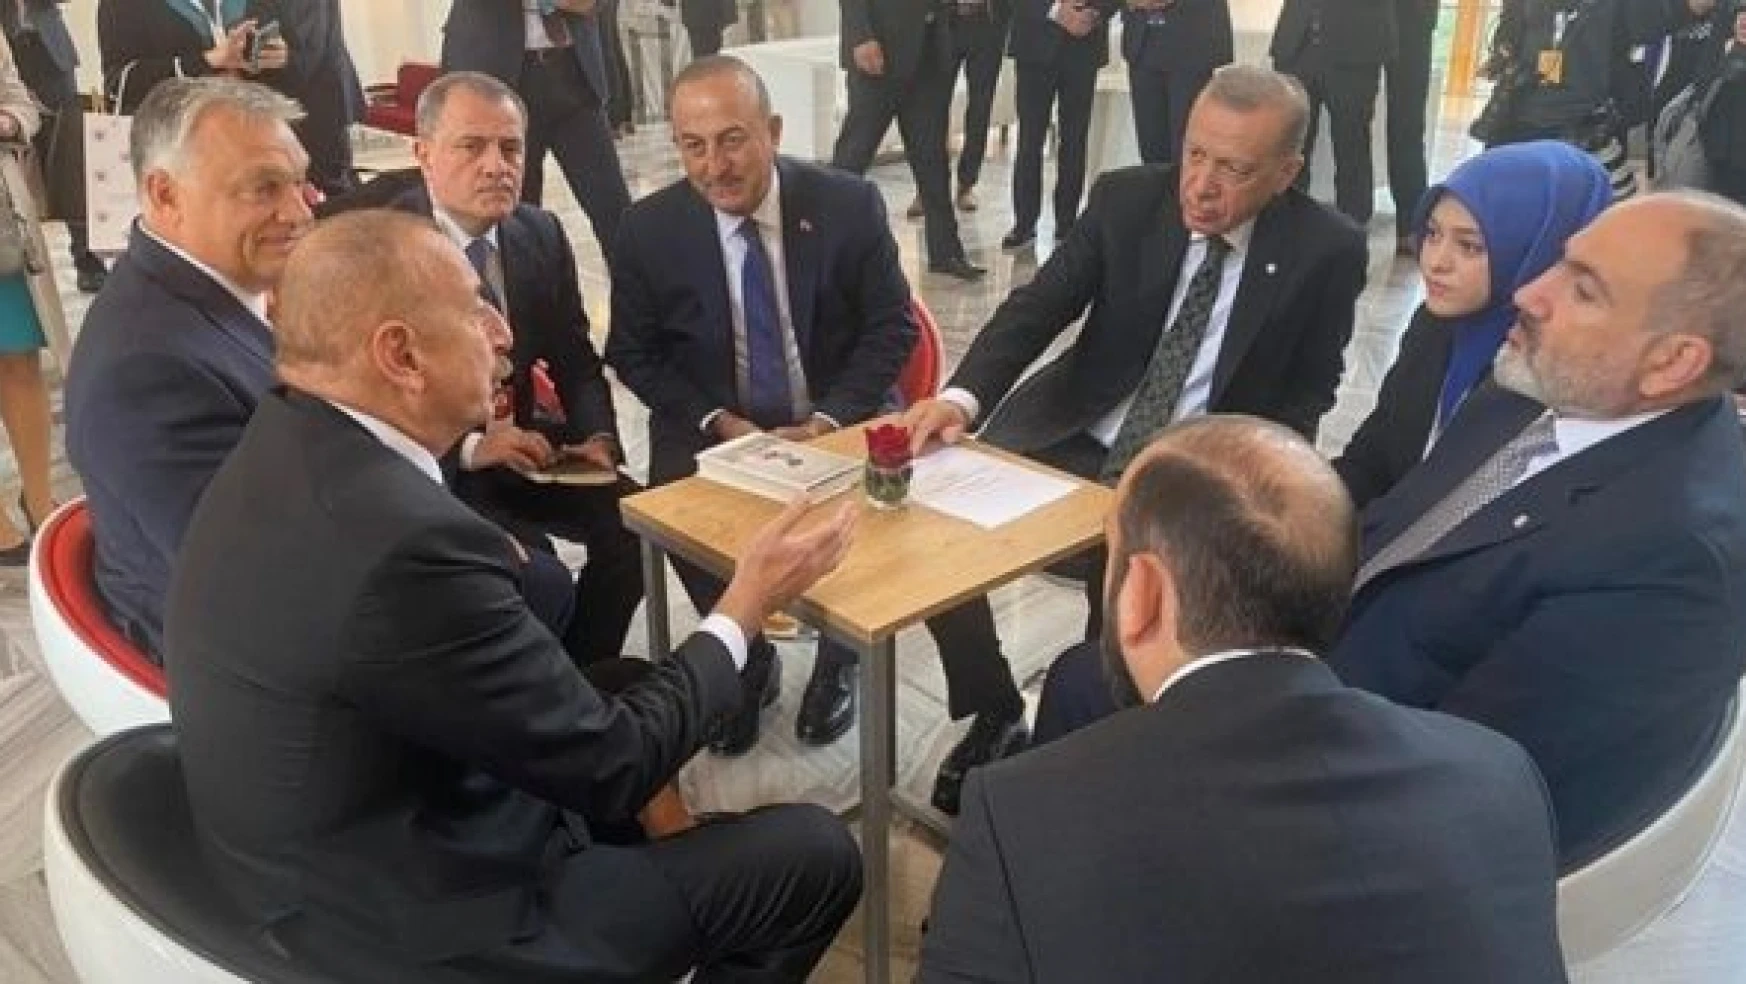 Büyük buluşma: Erdoğan, Aliyev ve Paşinyan aynı masada